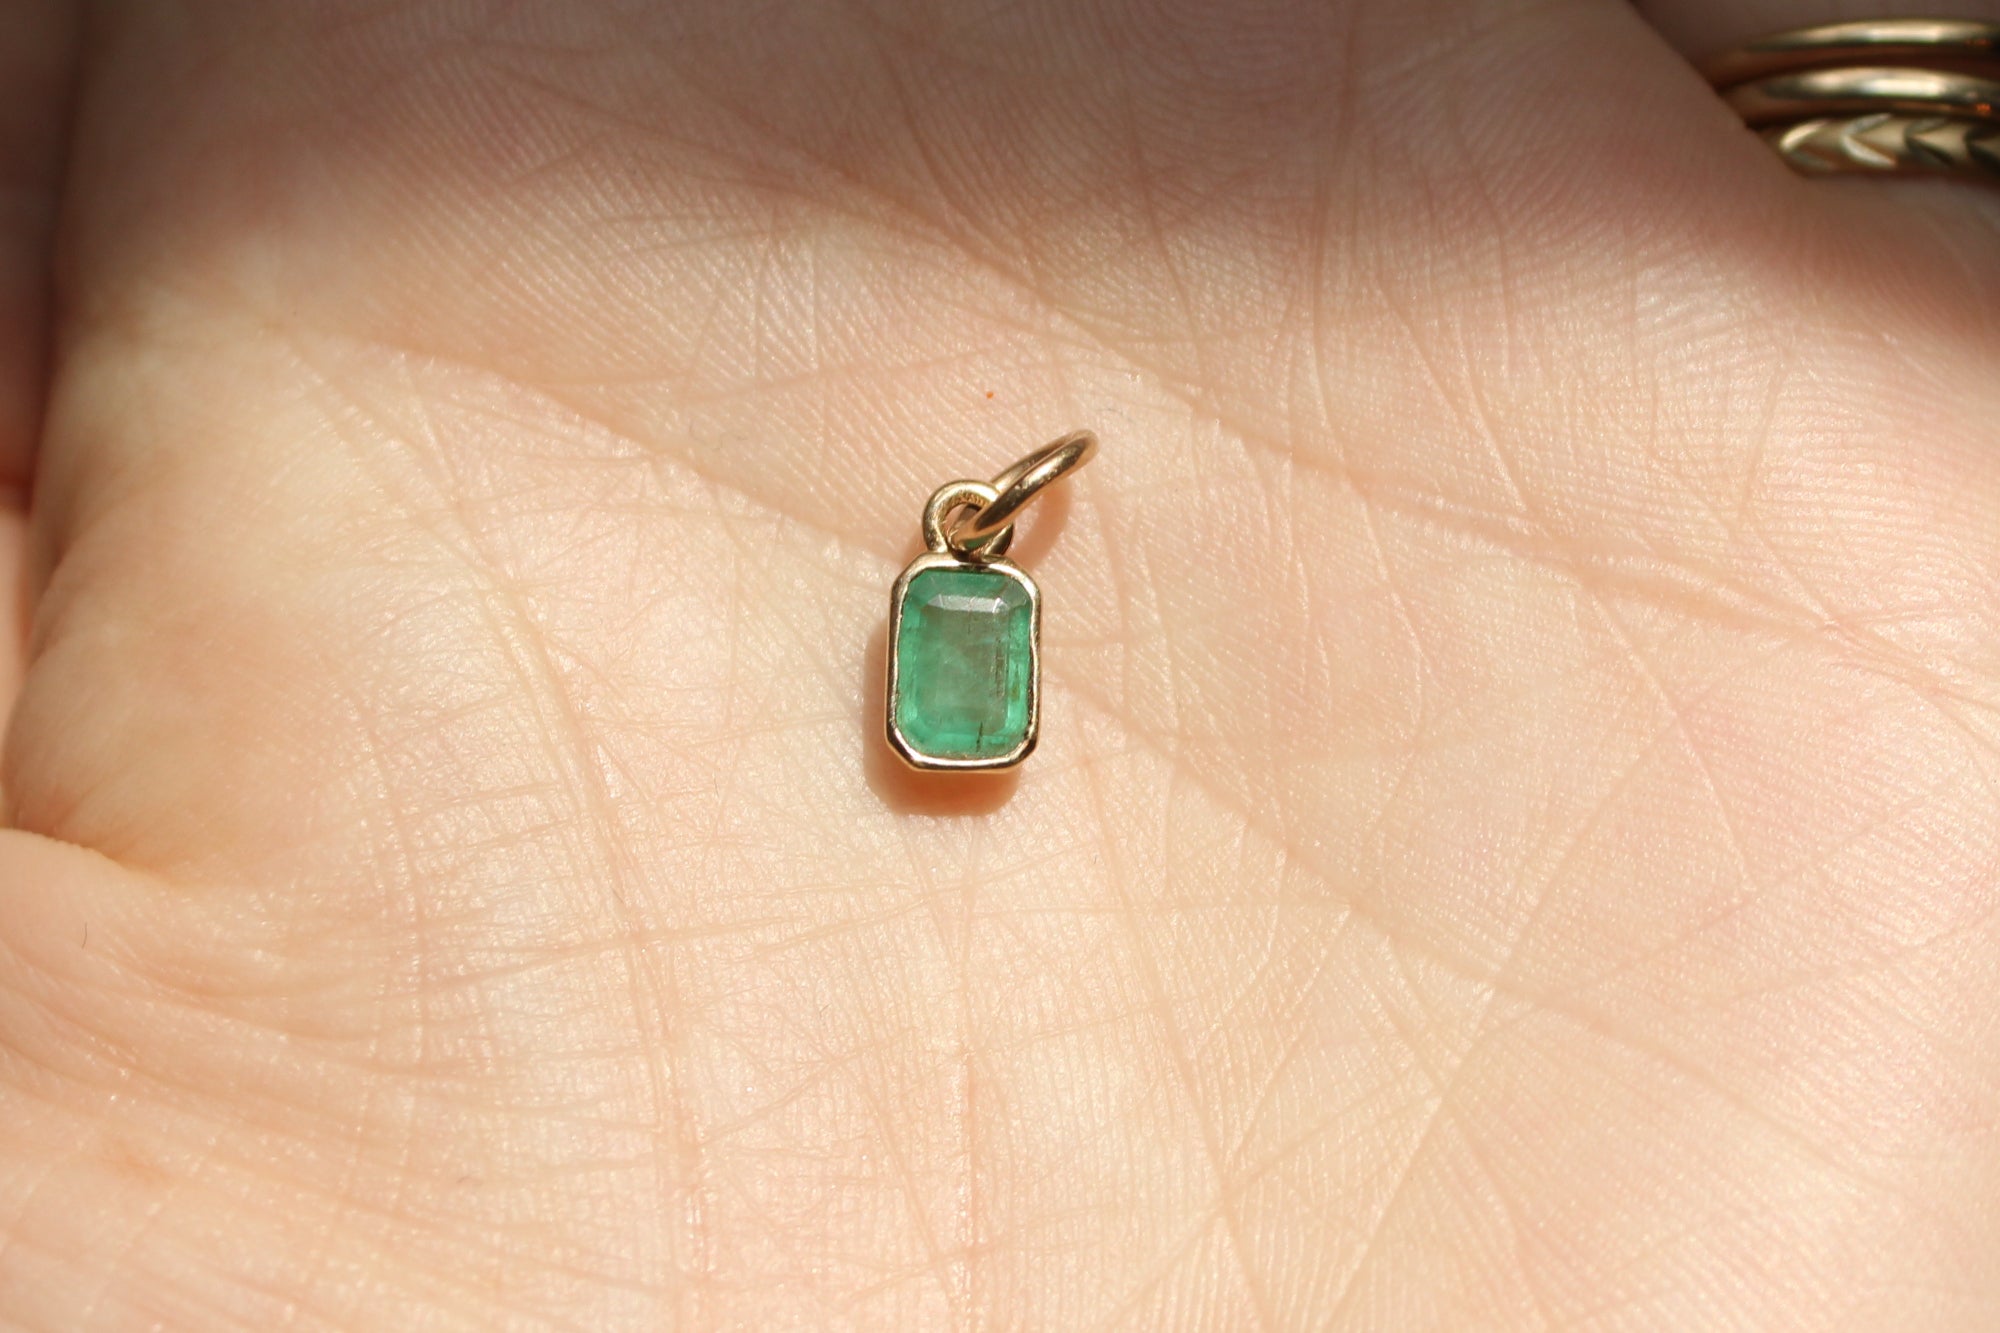 Handset Natural Emerald Pendant dunia simunovic jewelry